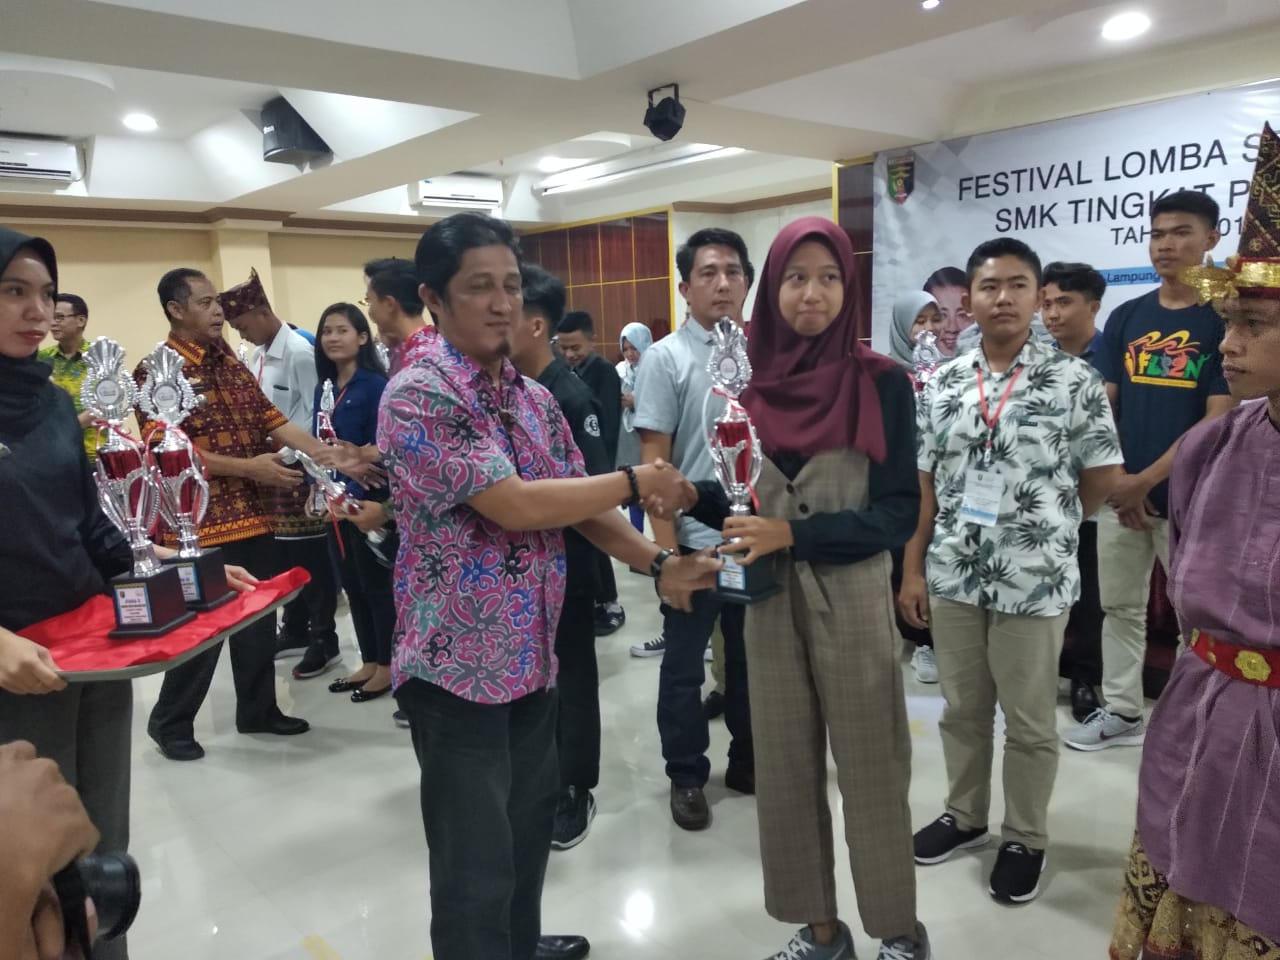 Juara 1 Lomba Teater Festival Lomba Seni (FLS) Tingkat Provinsi Lampung Tahun 2019